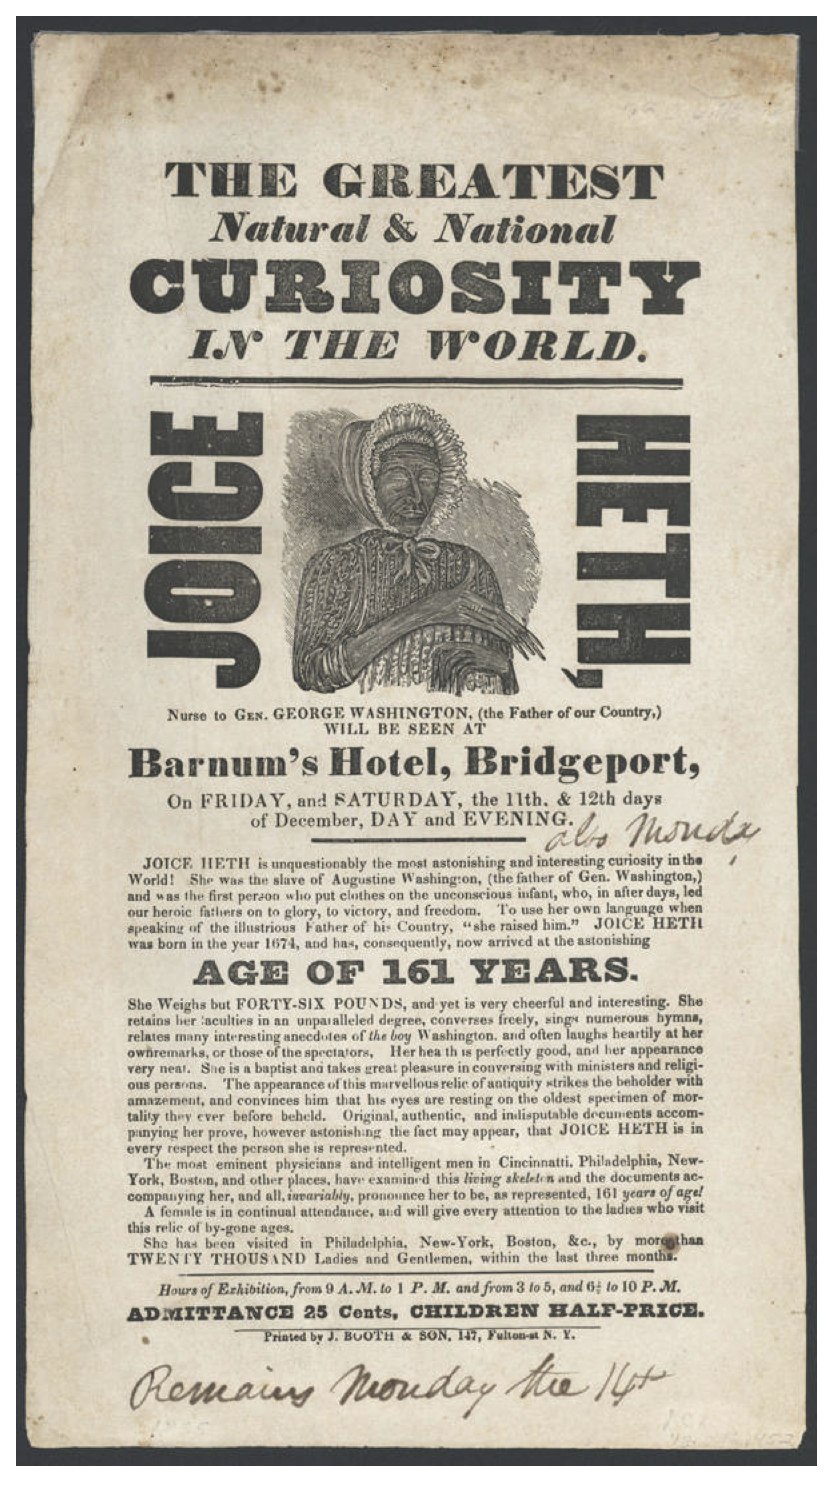 Joice Heth poster, By J. Booth & Son, 147 Fulton St NY [Public domain], via Wikimedia Commons